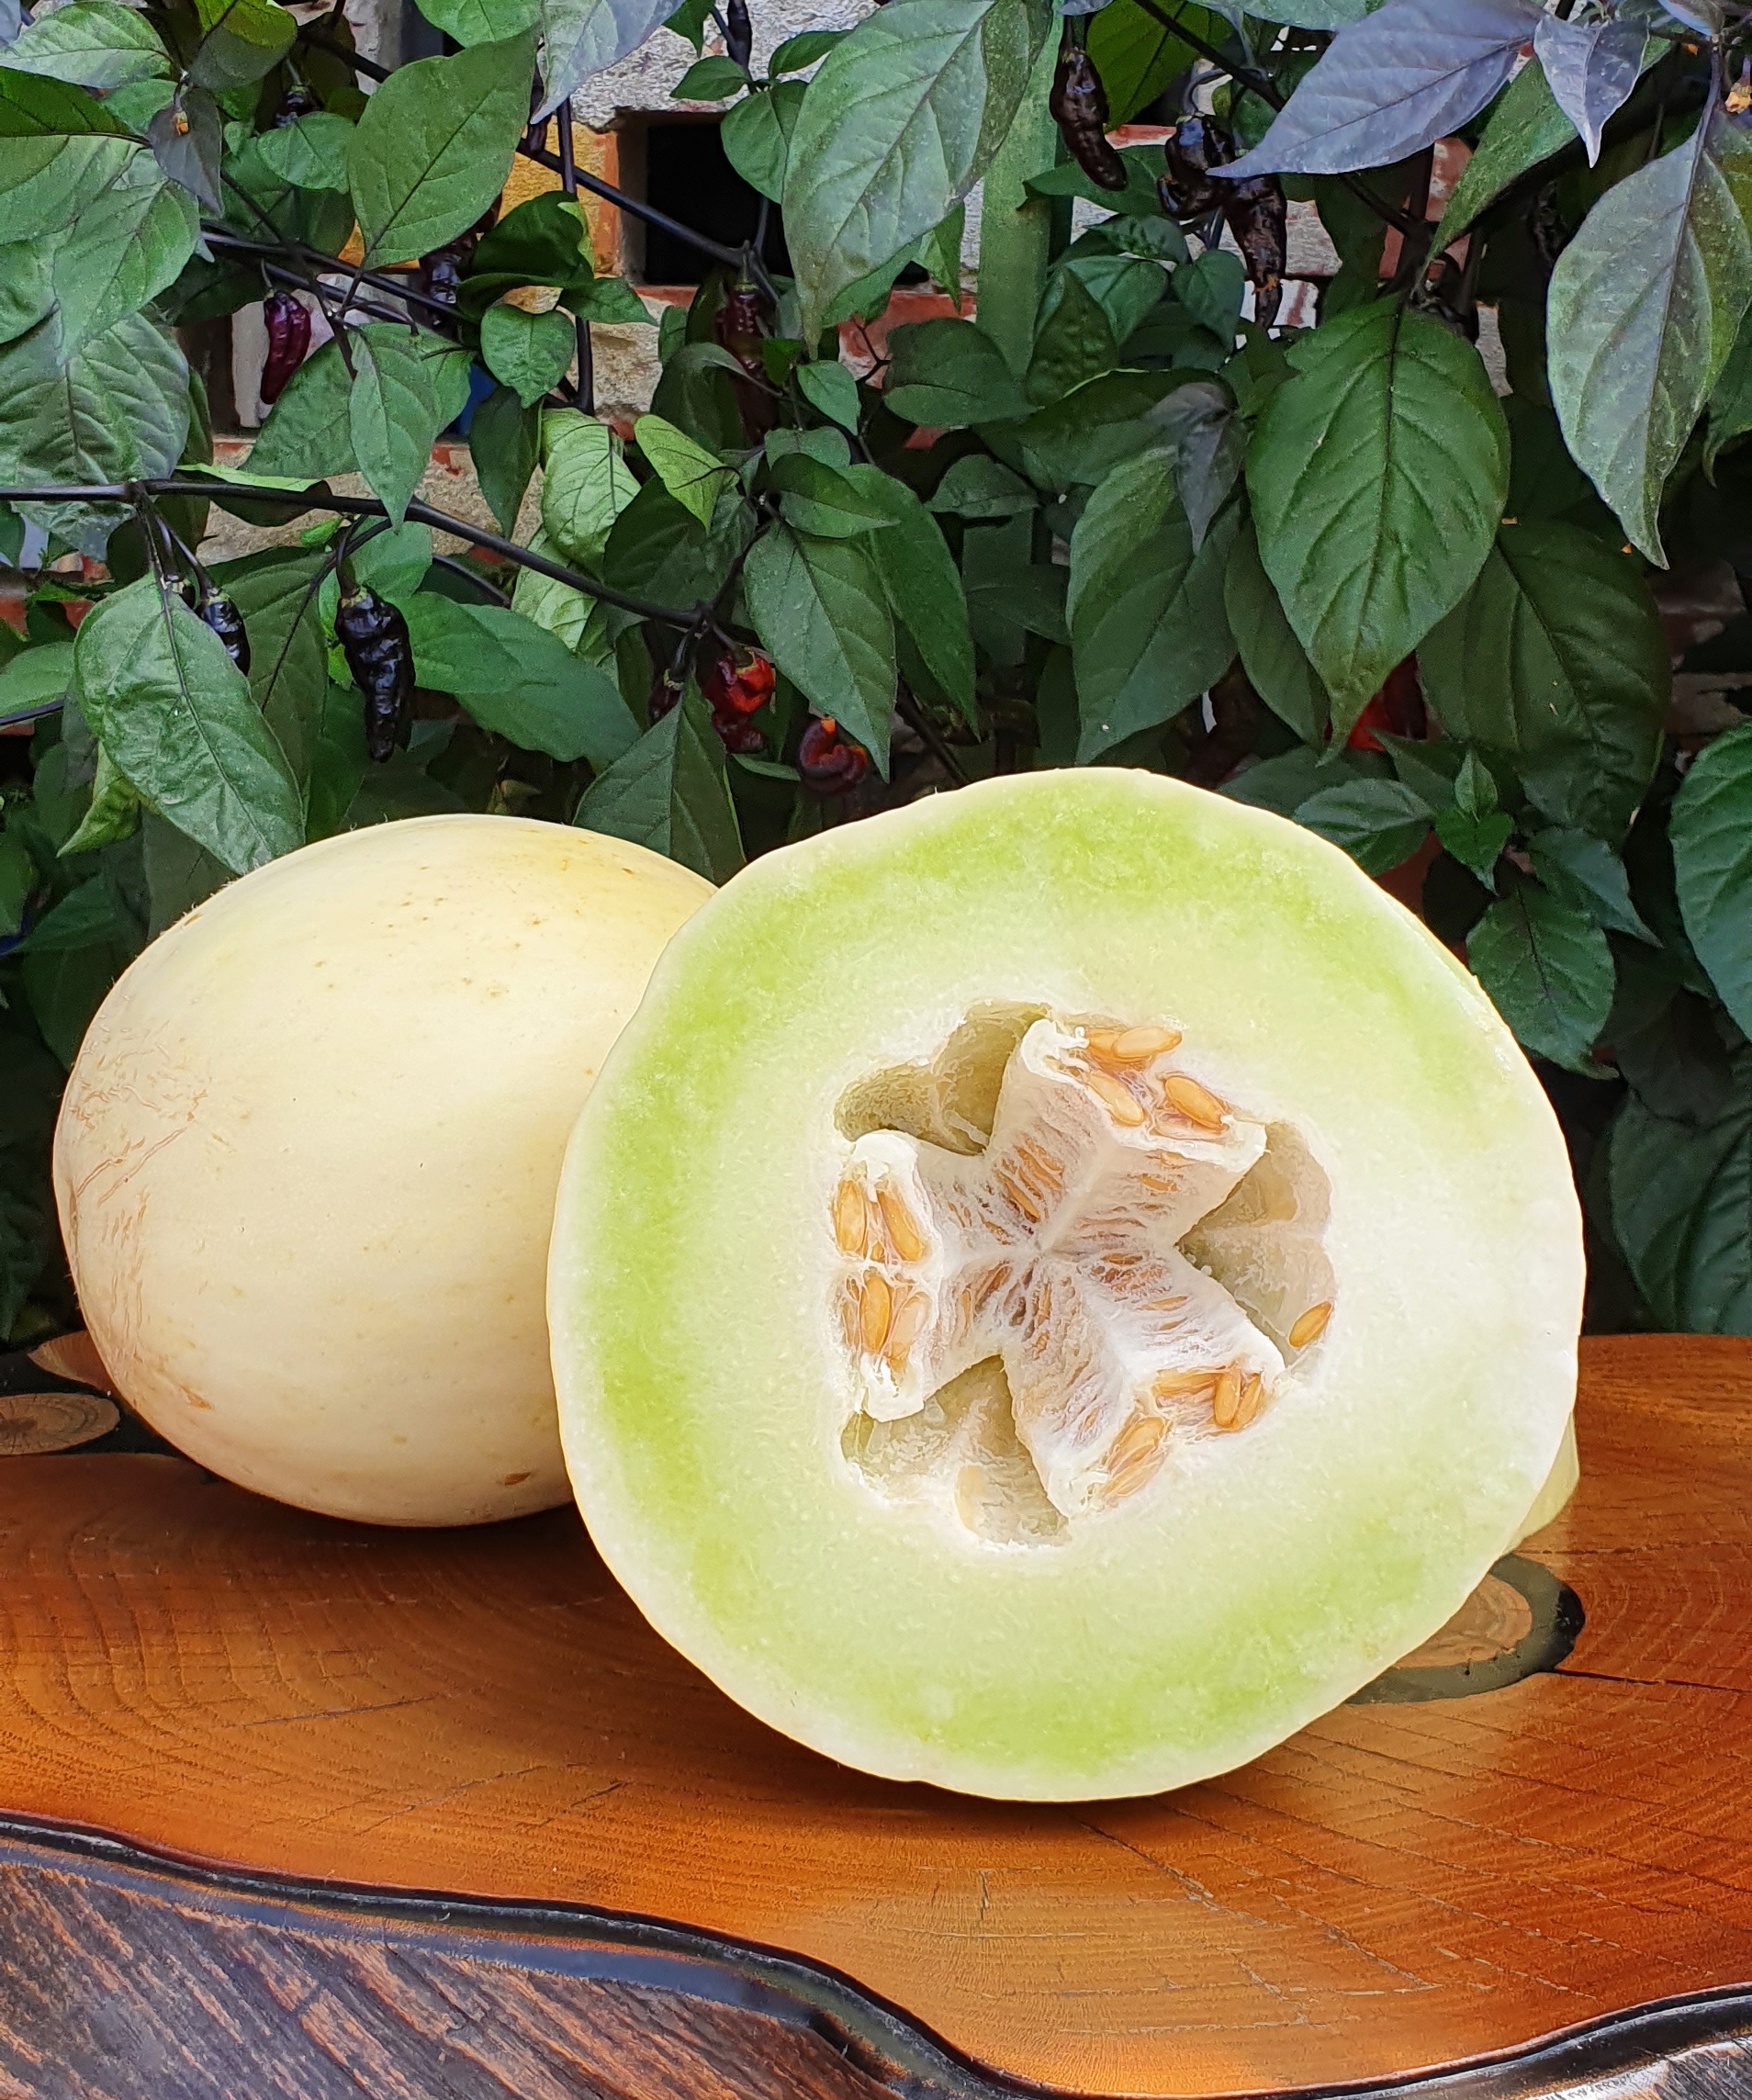 Melons: HONEY DEW ( Medovaya Rosa) Melon